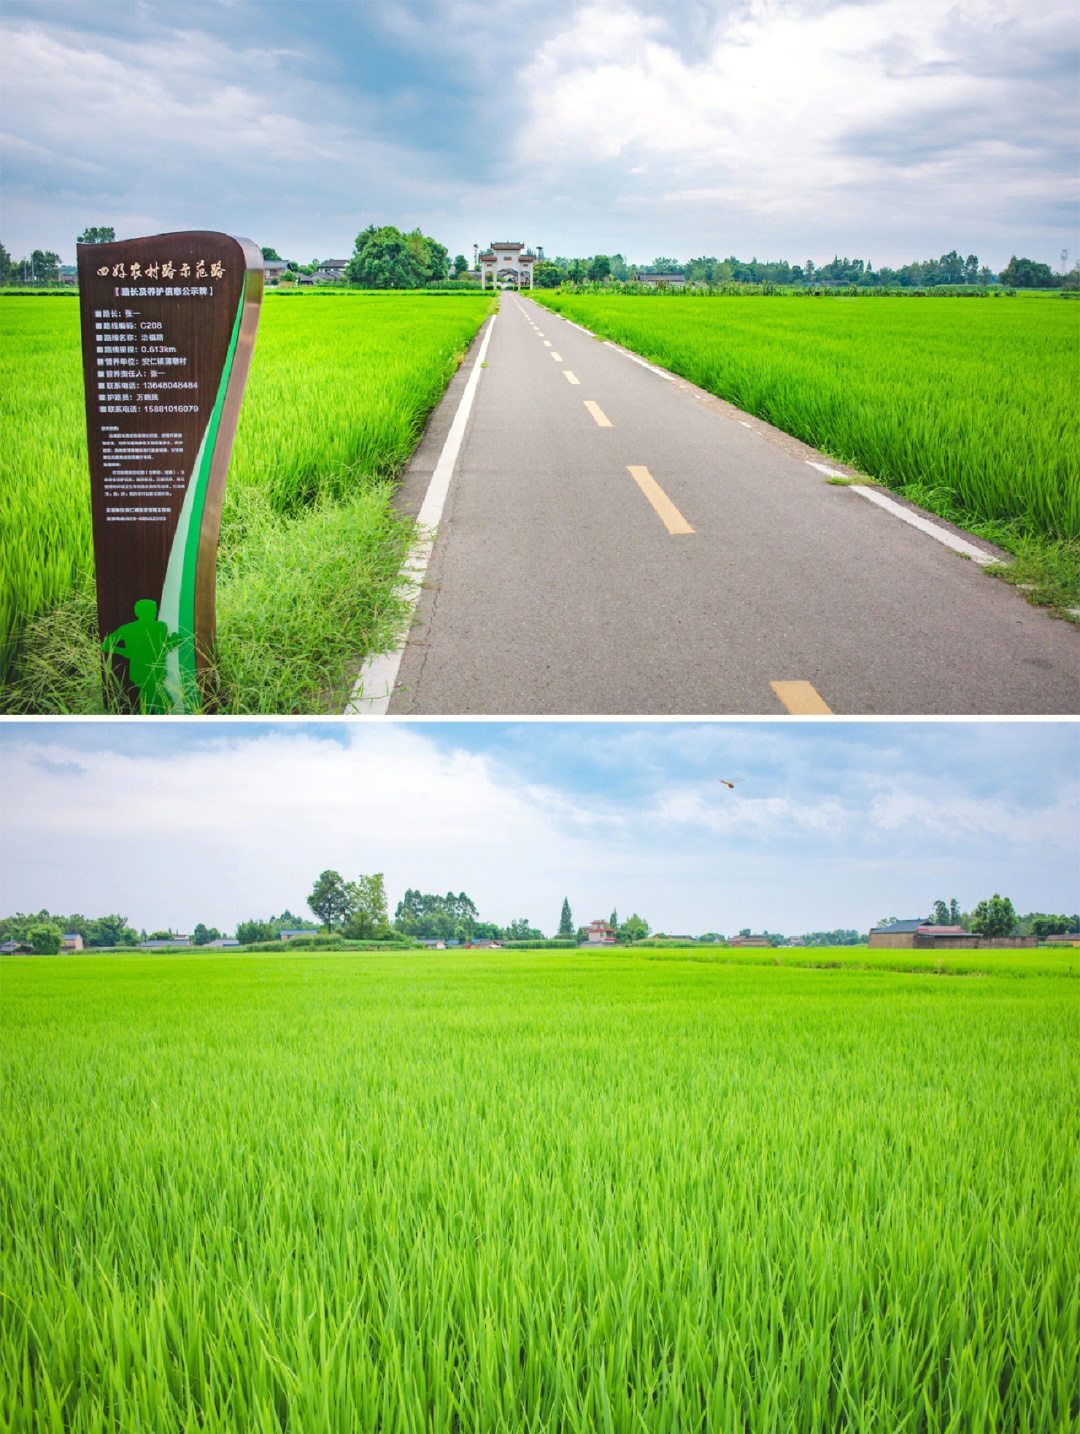 2022.7.16拍于大邑安仁镇元兴社区天寿村附近,那一片全是稻田.